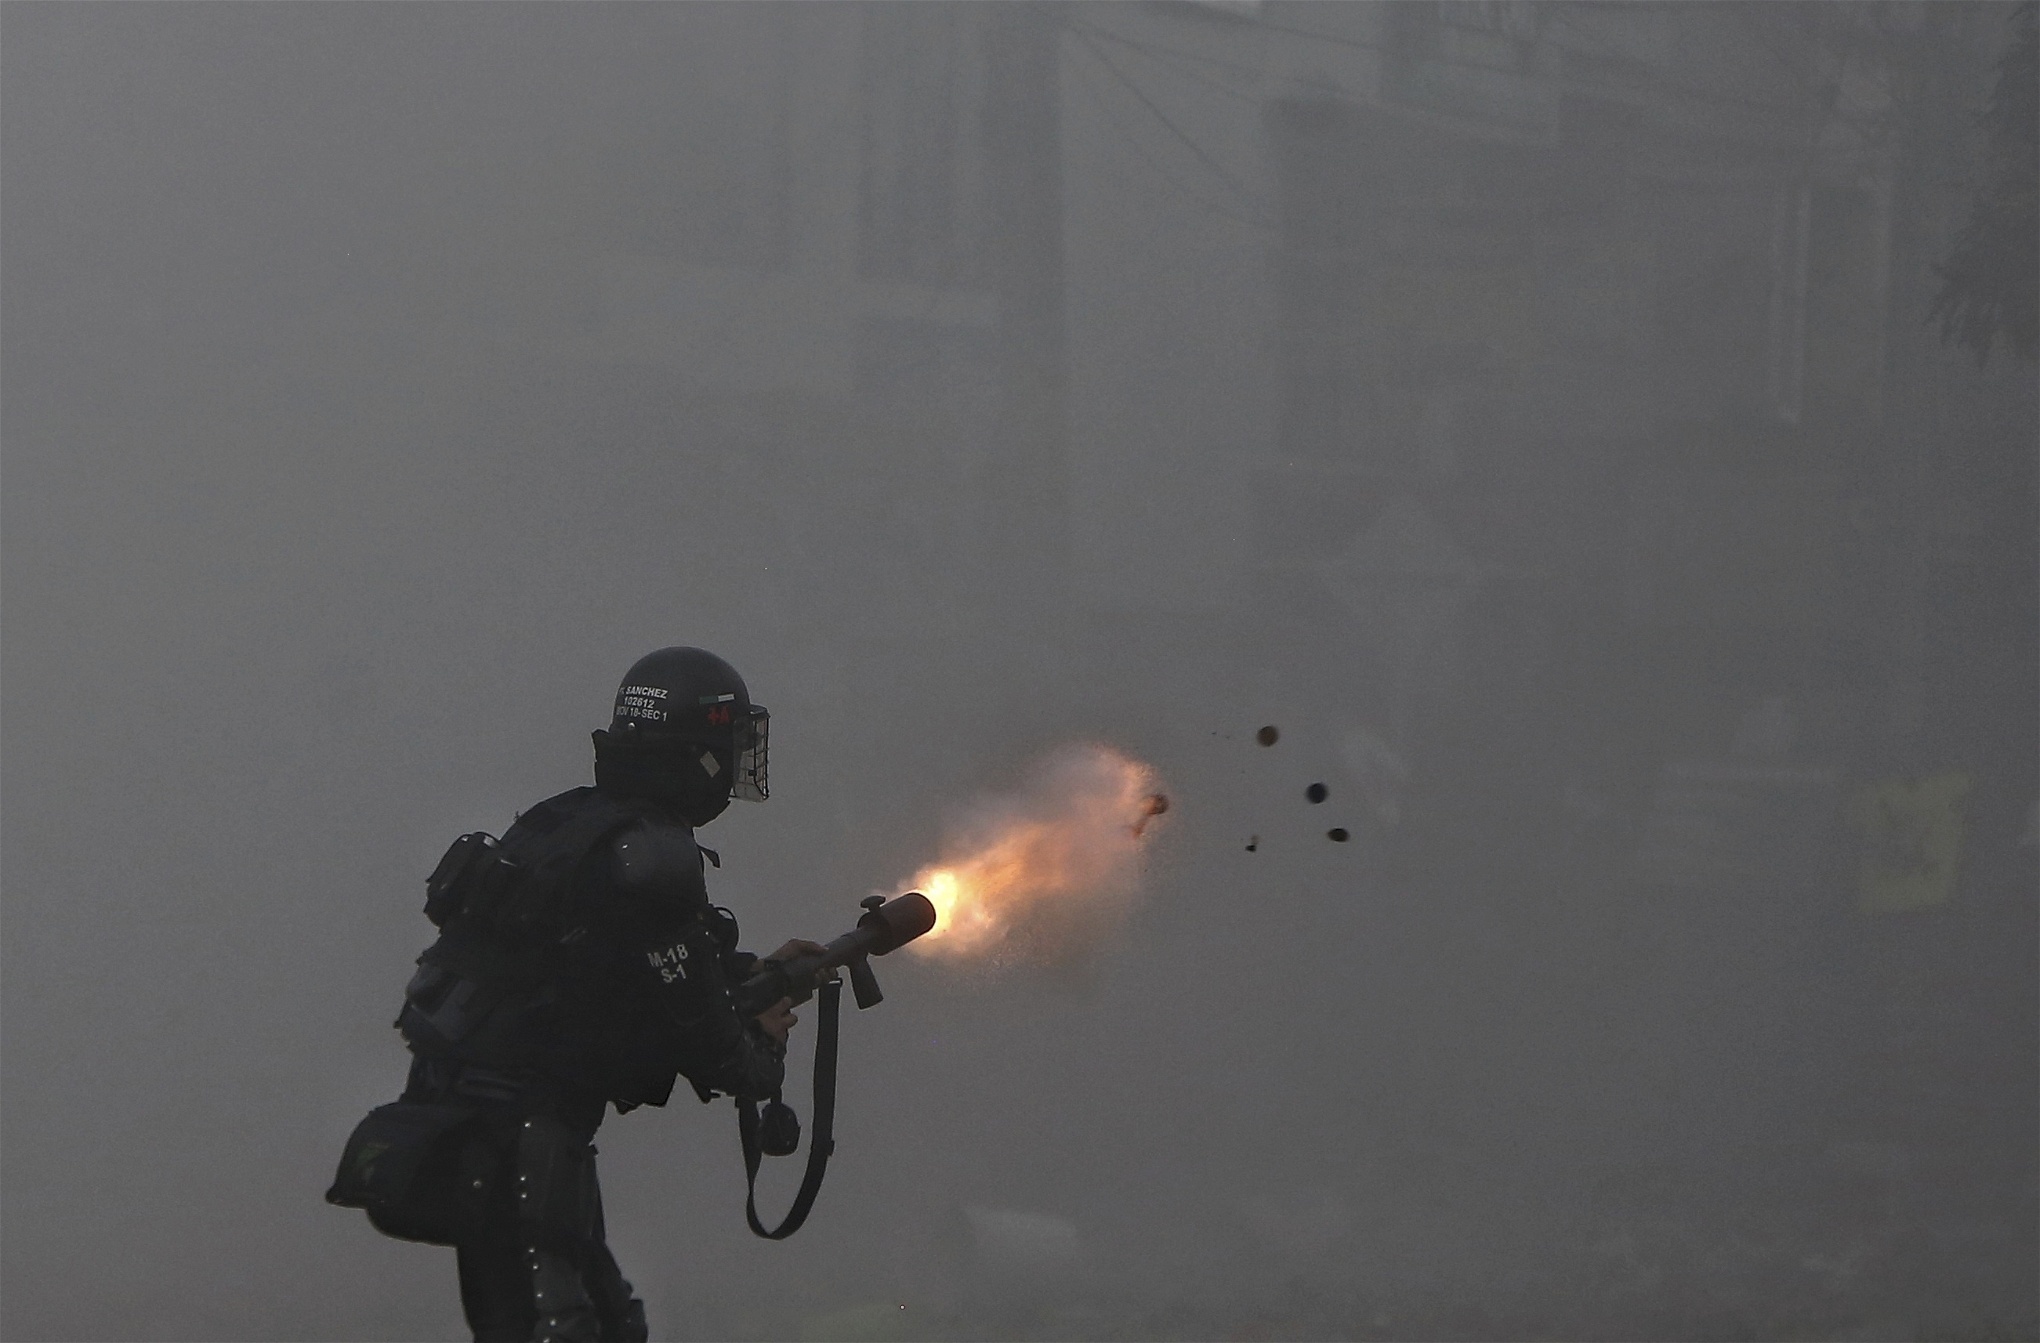 En polis skjuter tårgas mot demonstranter i Cali den 3 maj. Polisen har under åtskilliga gånger anklagats för grovt övervåld. Foto: Andres Gonzalez/AP/TT